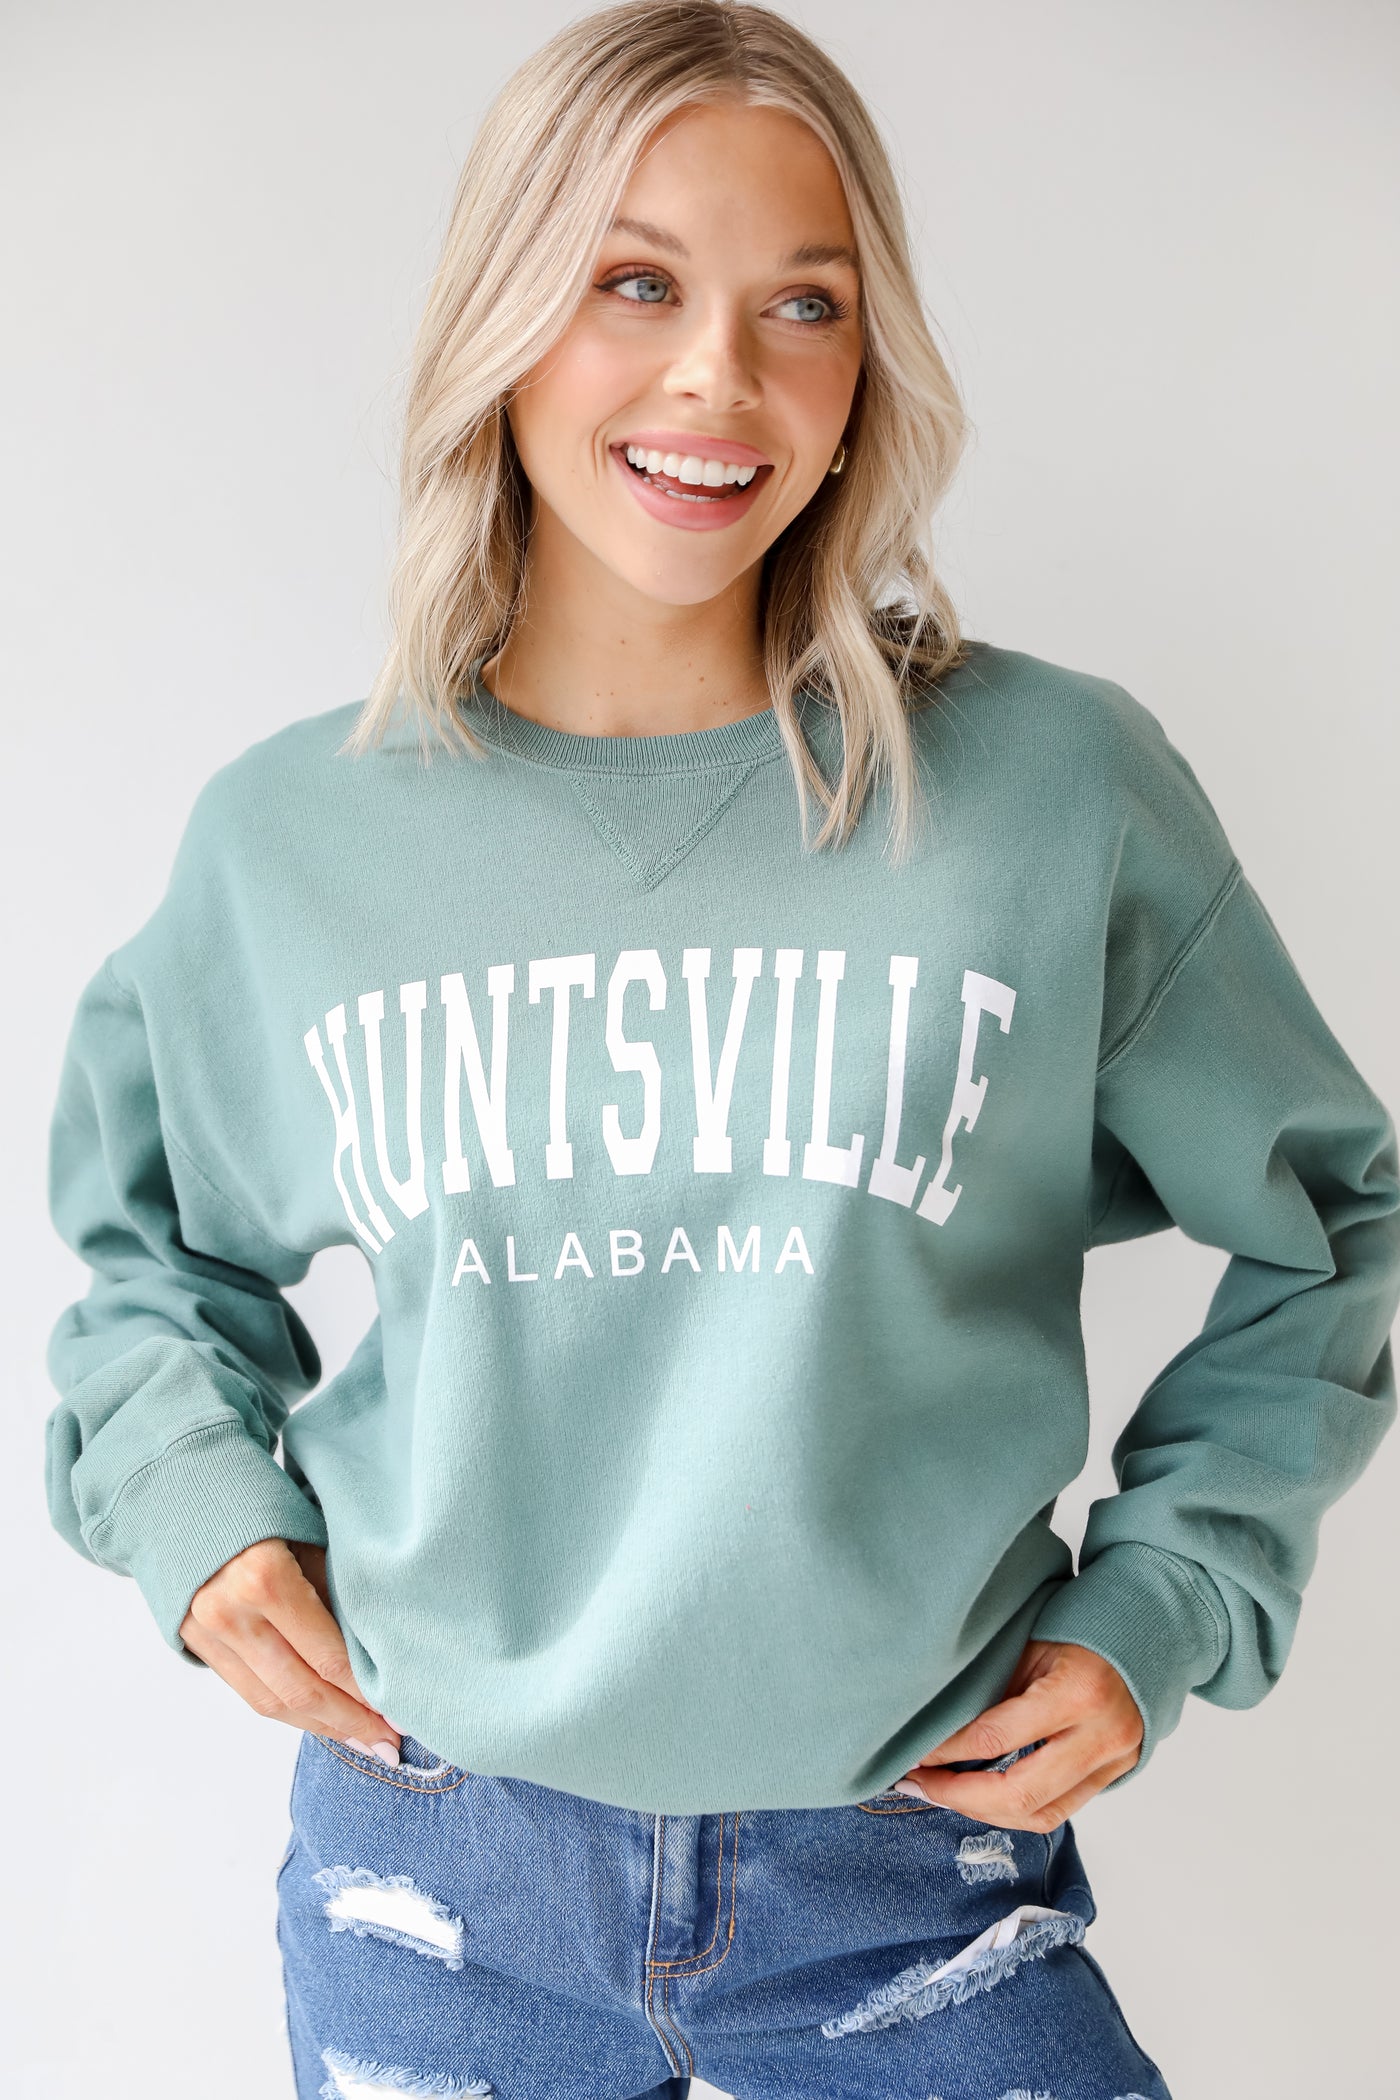 Seafoam Huntsville Alabama Pullover on model